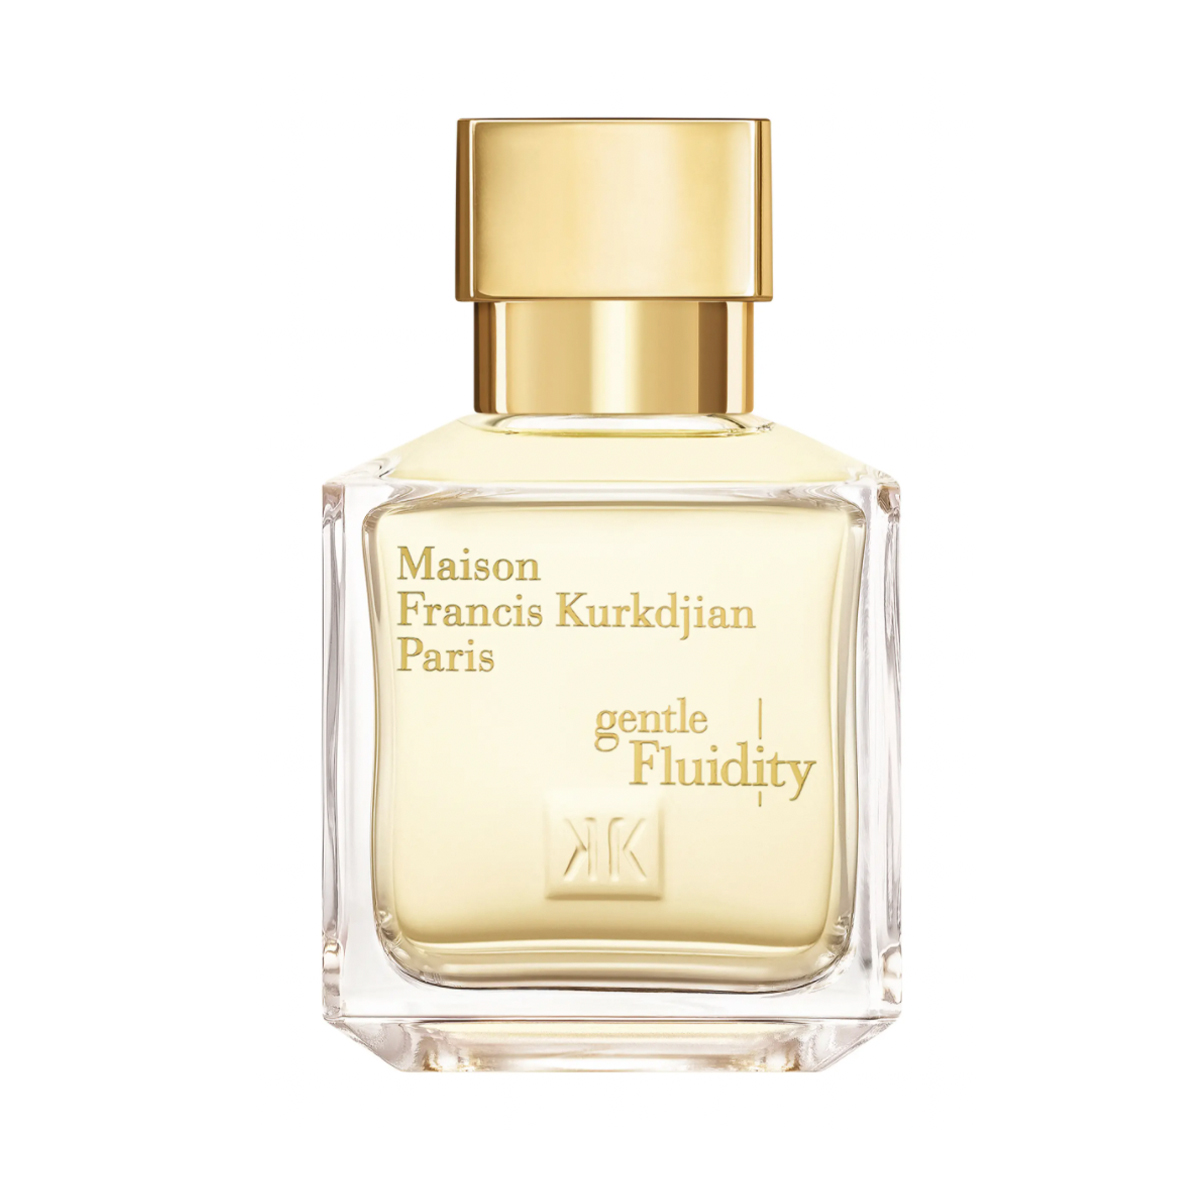 Maison Francis Kurkdjian Paris Gentle Fluidity Gold Eau de Parfum